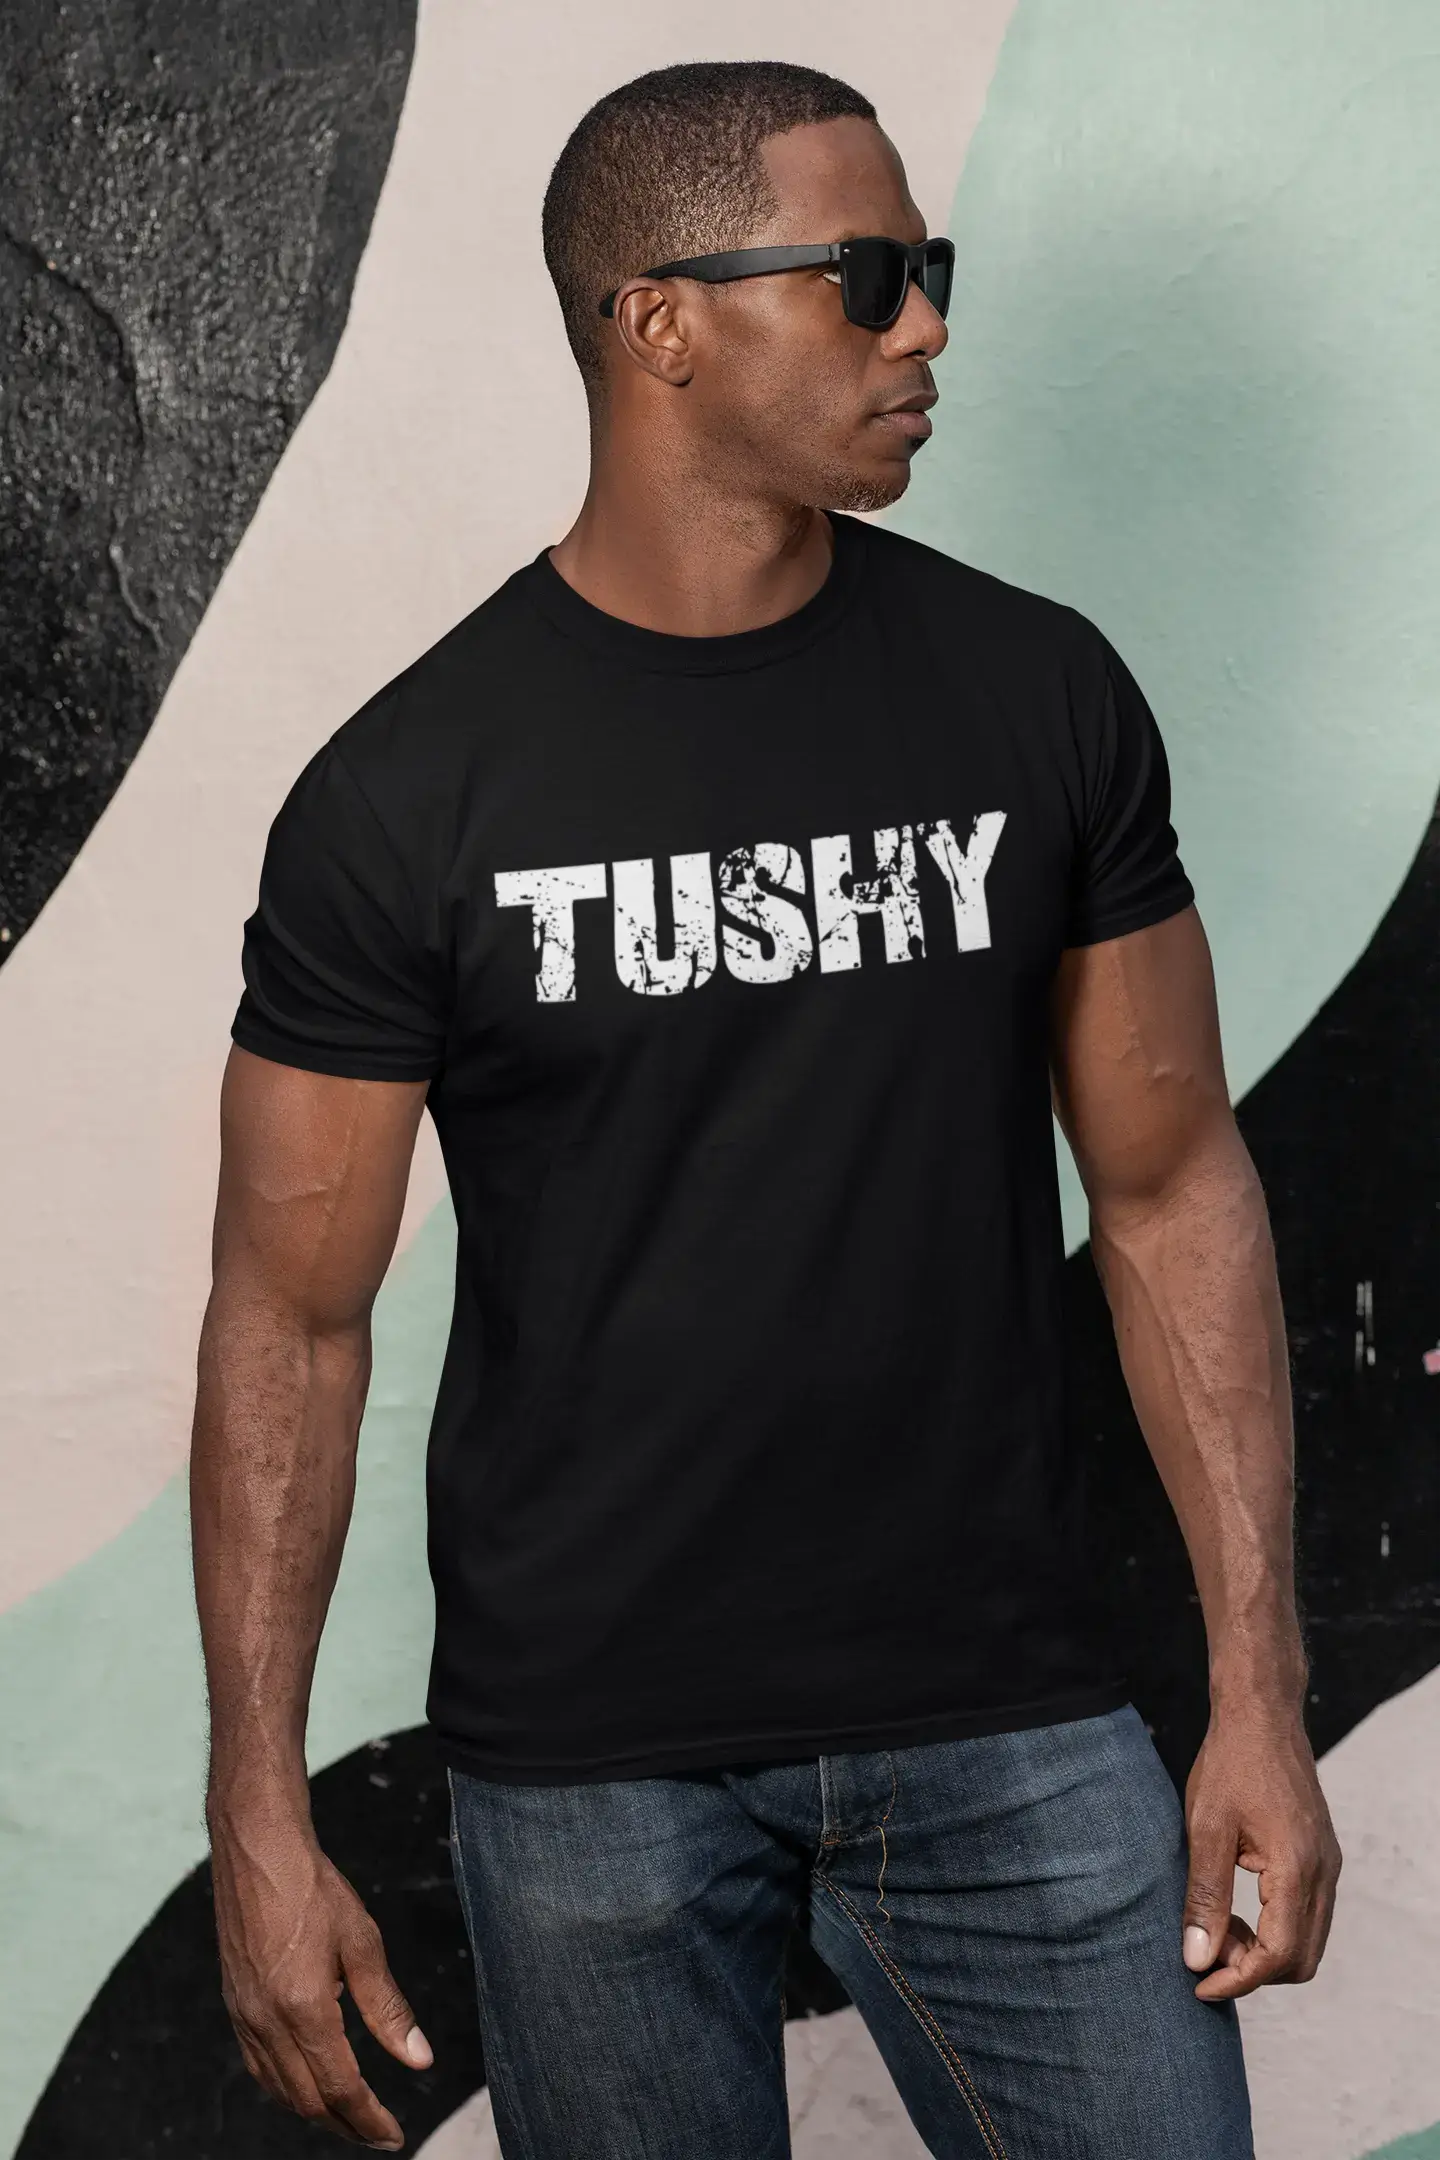 tushy Men's Retro T shirt Black Birthday Gift 00553